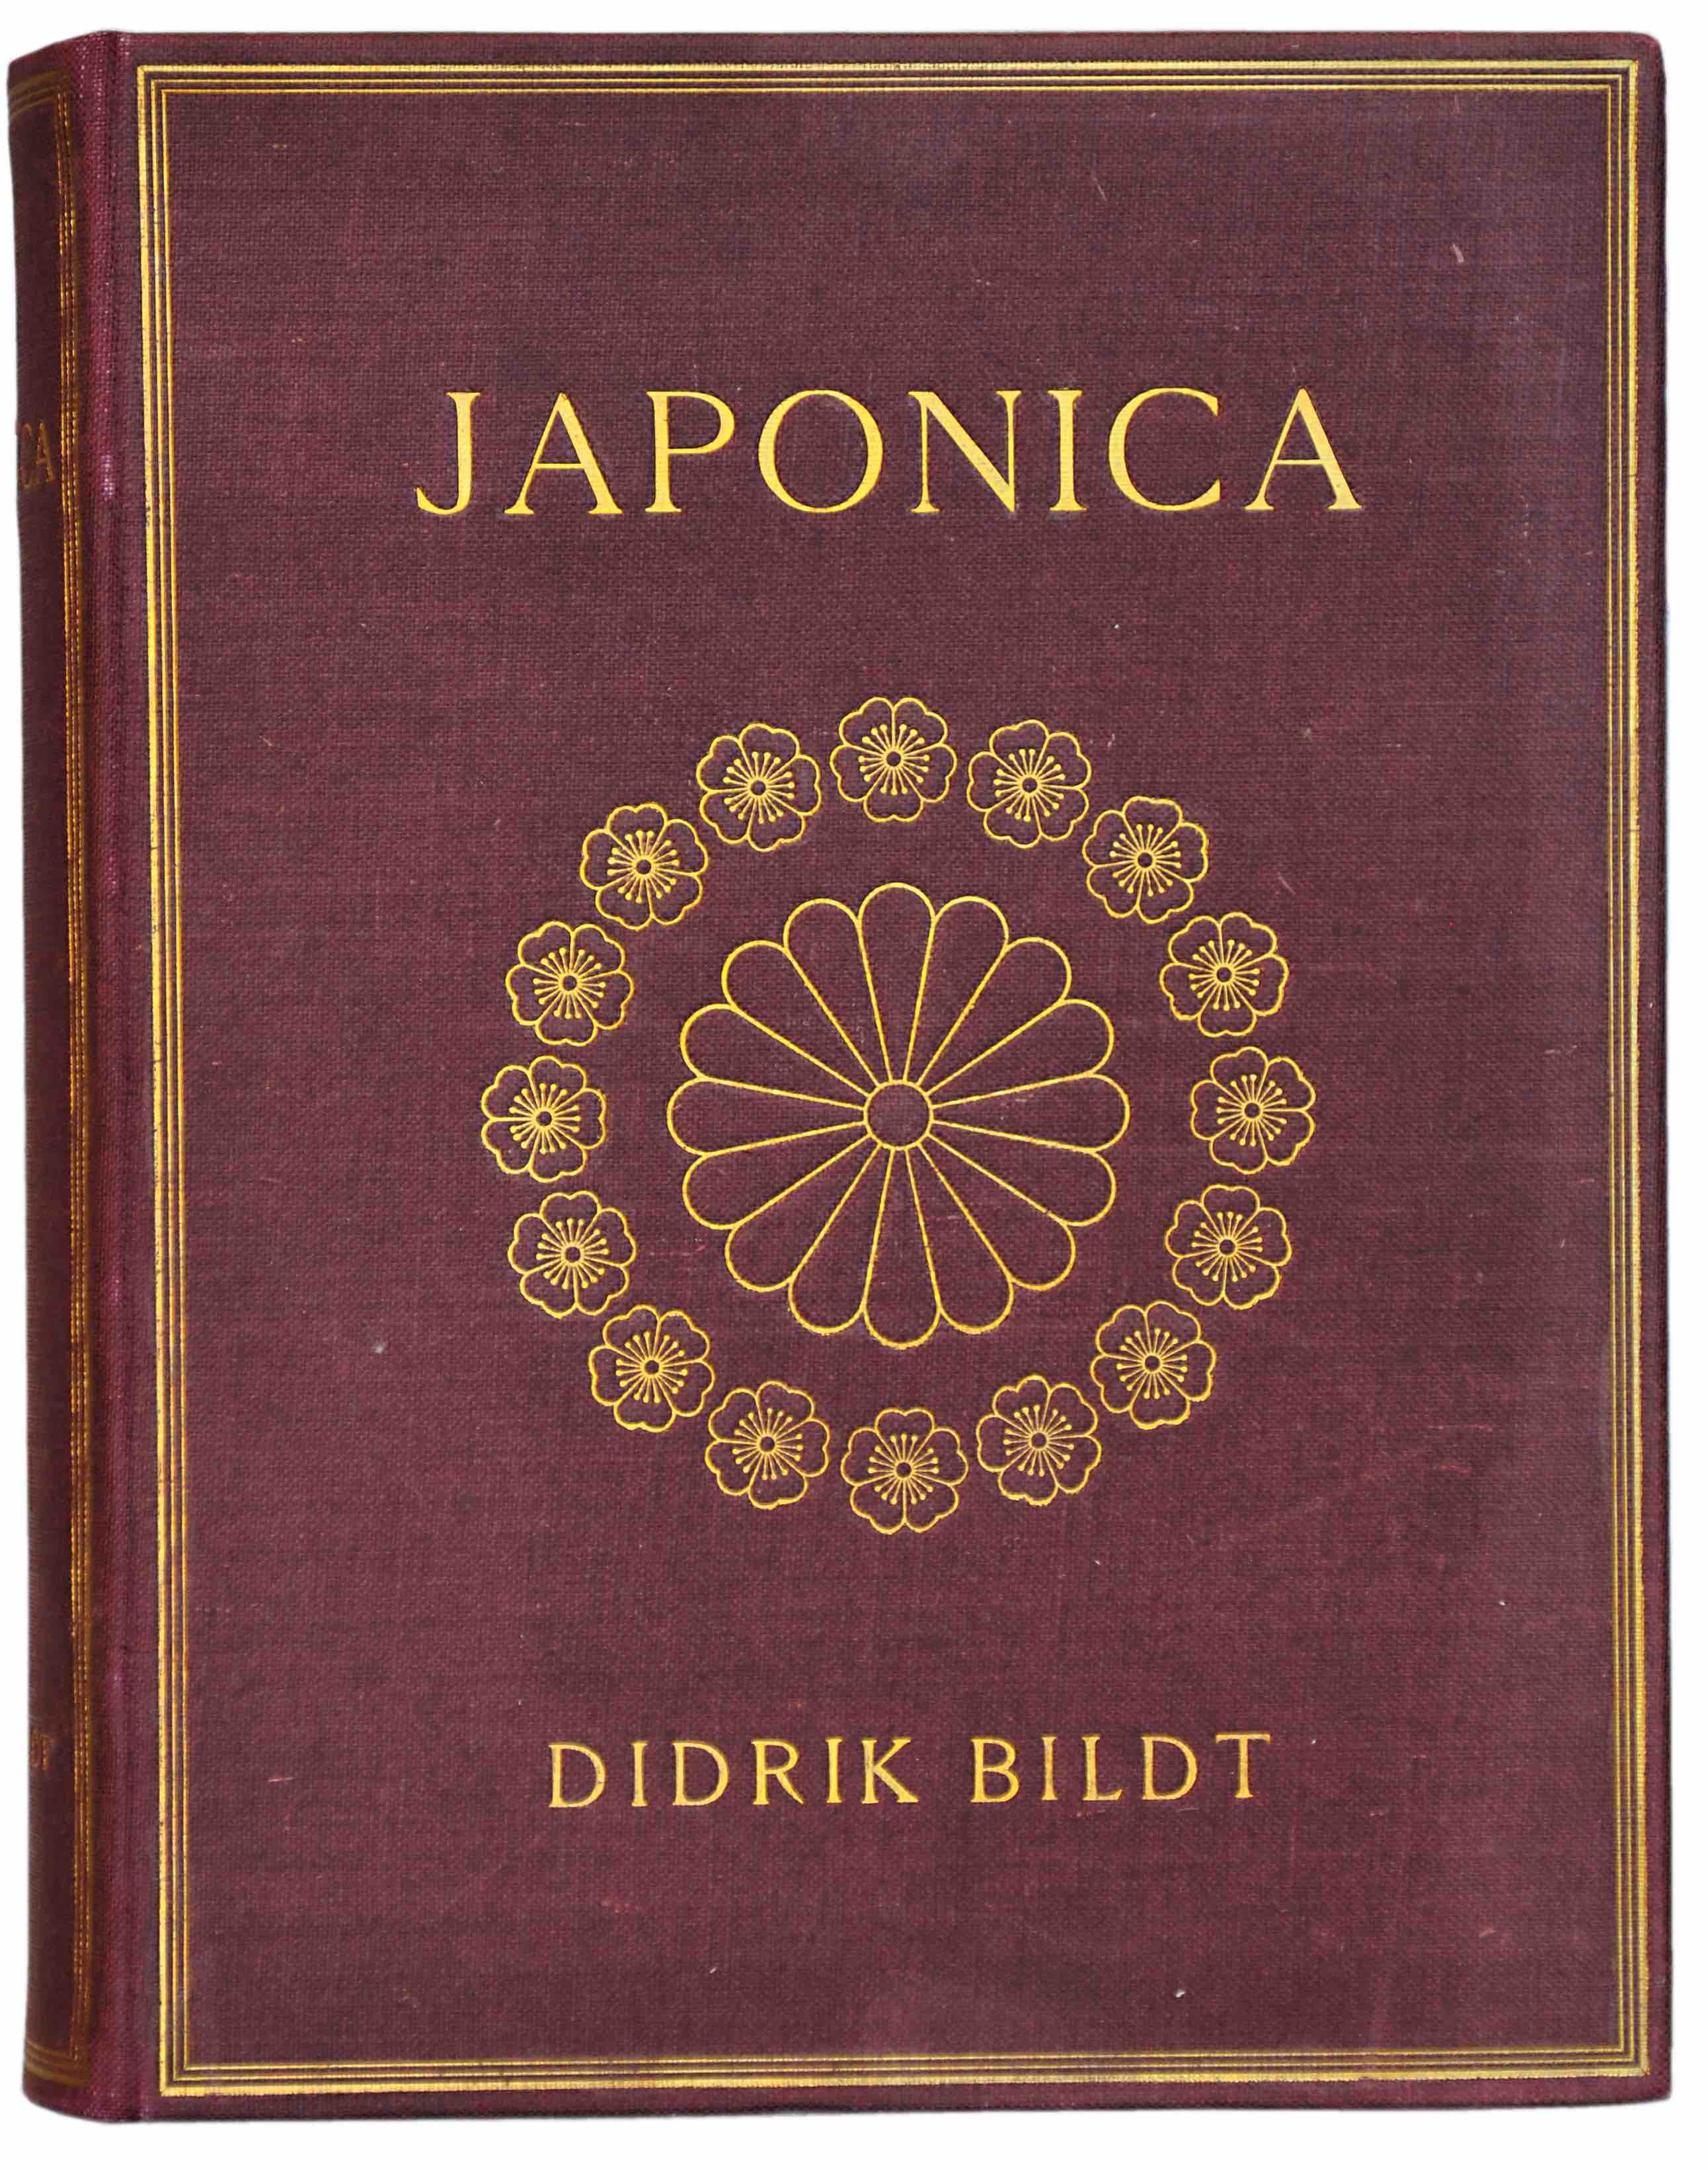 BILDT, DIDRIK CARL: -  Japonica. Bilder av japanska freml och upplysningar drom. Stockholm 1914.